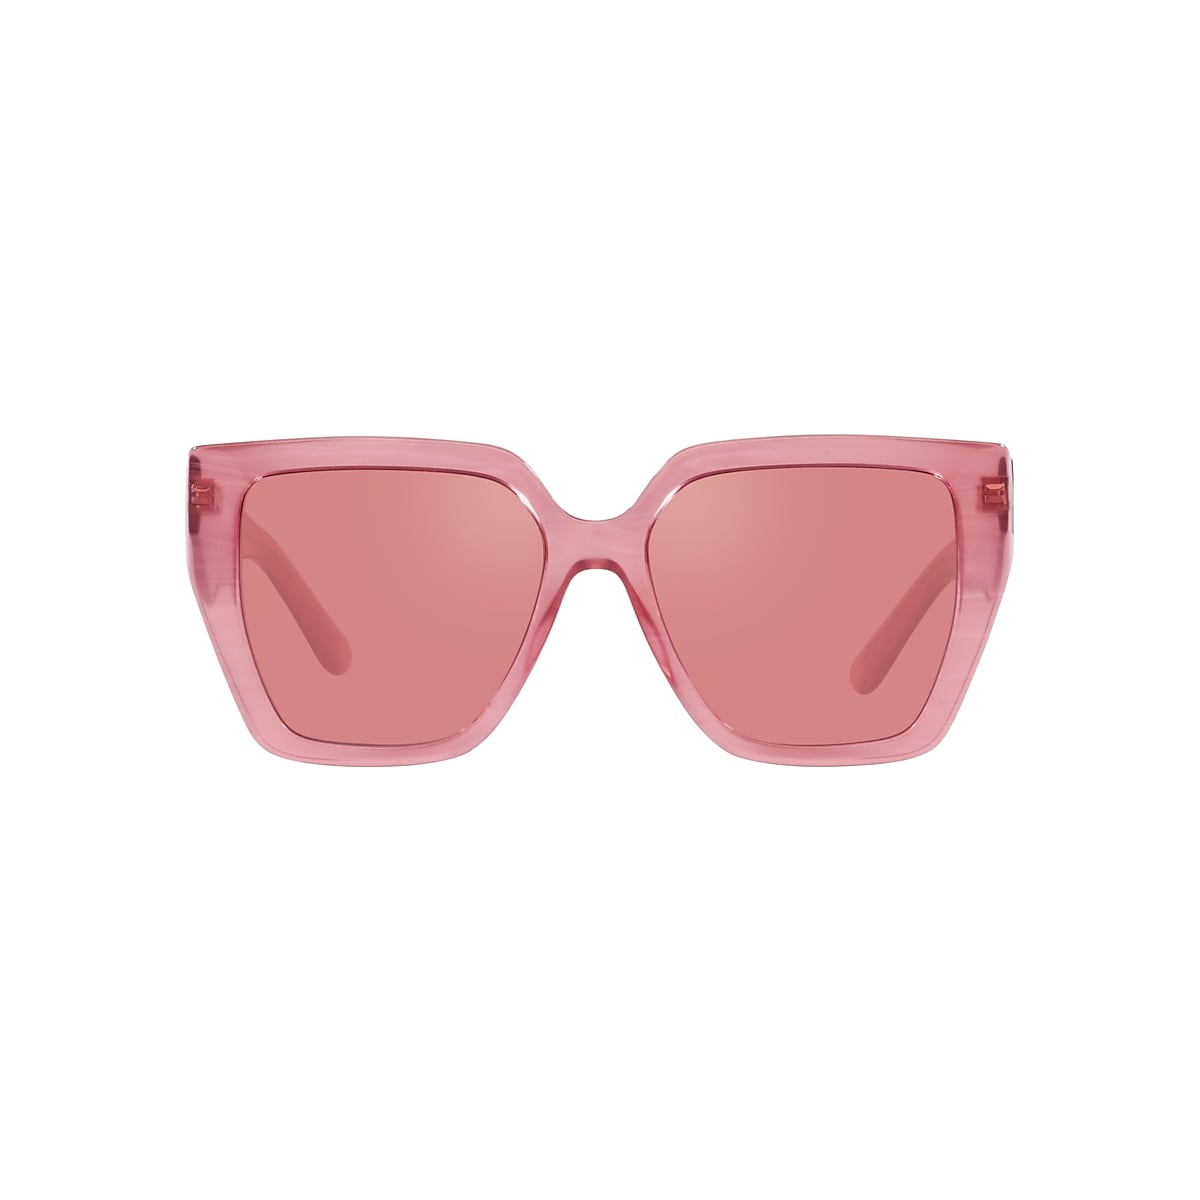 DOLCE&GABBANA DG4438 Fleur Pink - Women Luxury Sunglasses, Pink Dark Mirror  Red Lens